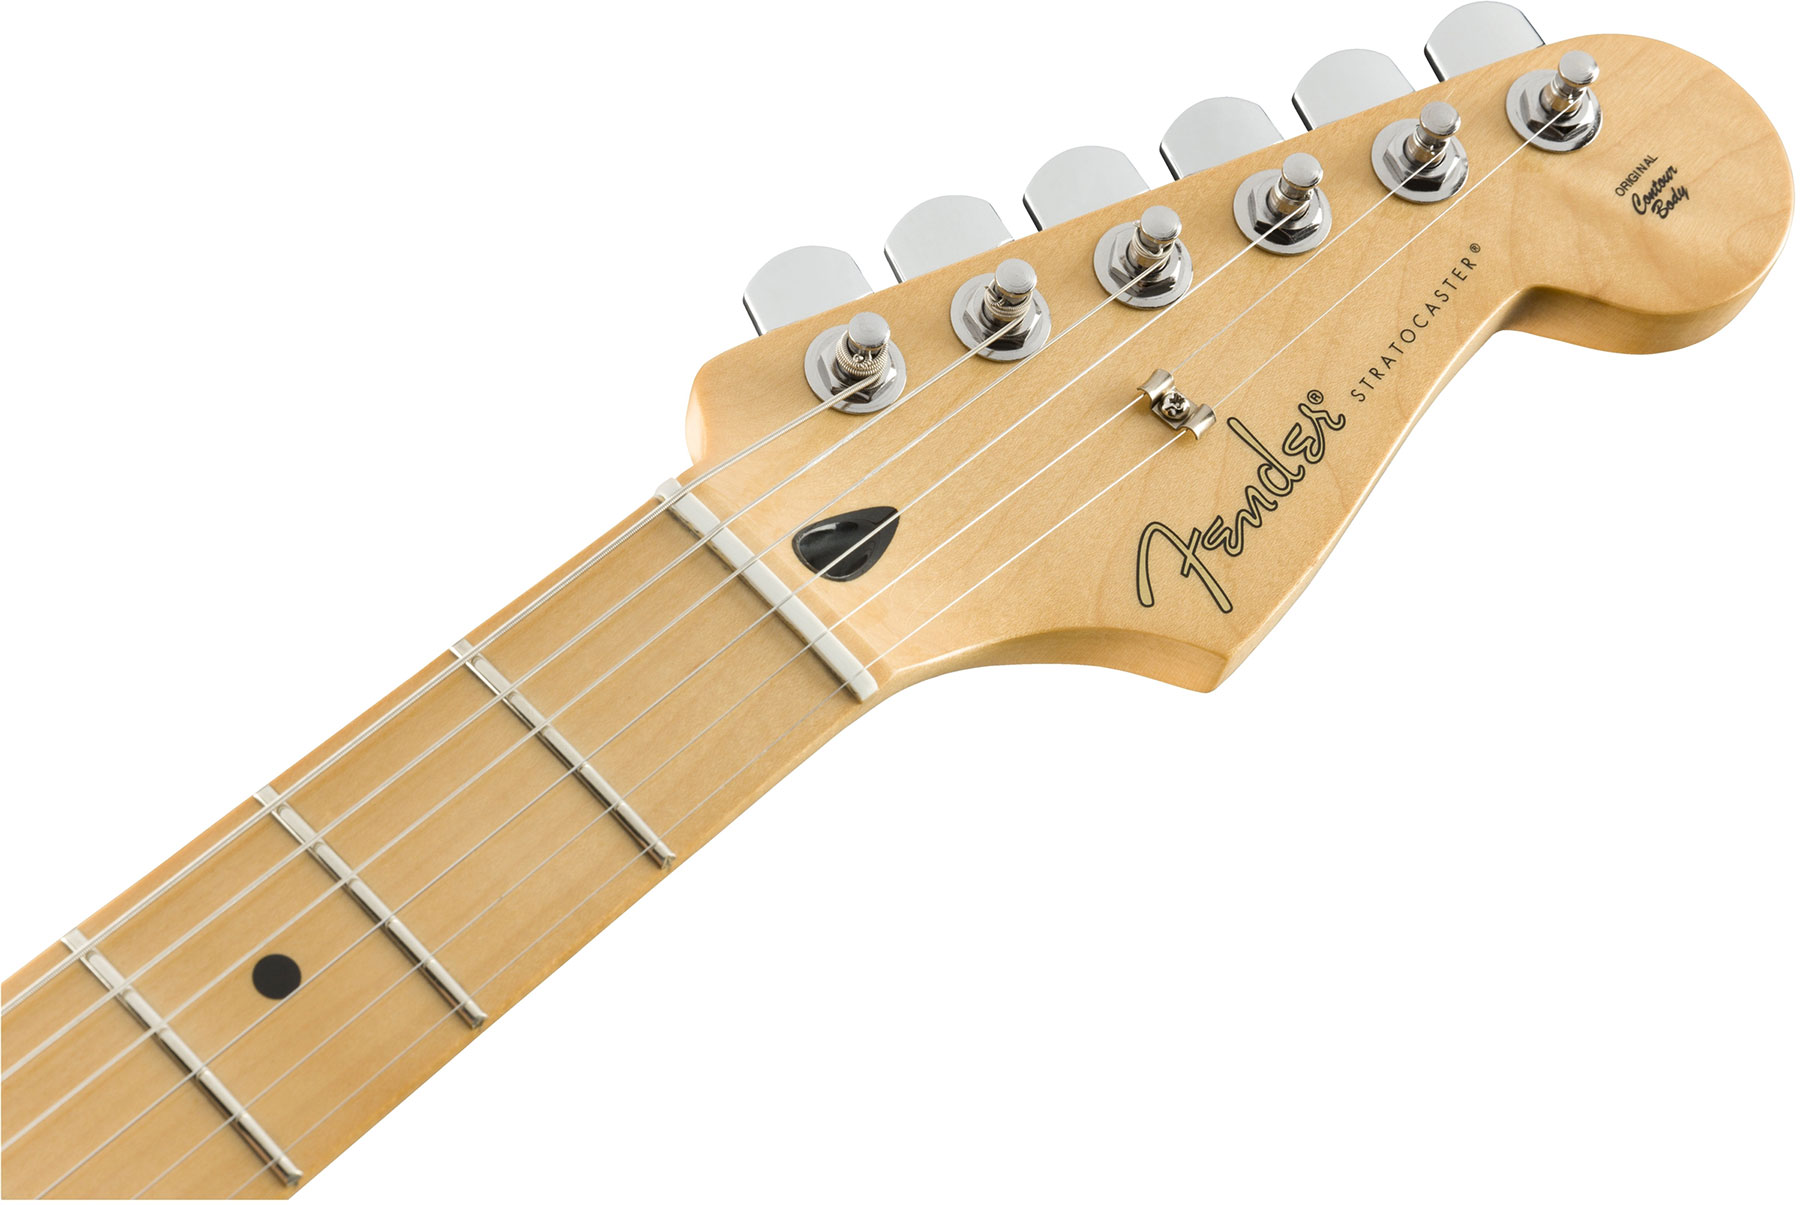 Fender Strat Player Mex Sss Pf - 3-color Sunburst - E-Gitarre in Str-Form - Variation 2